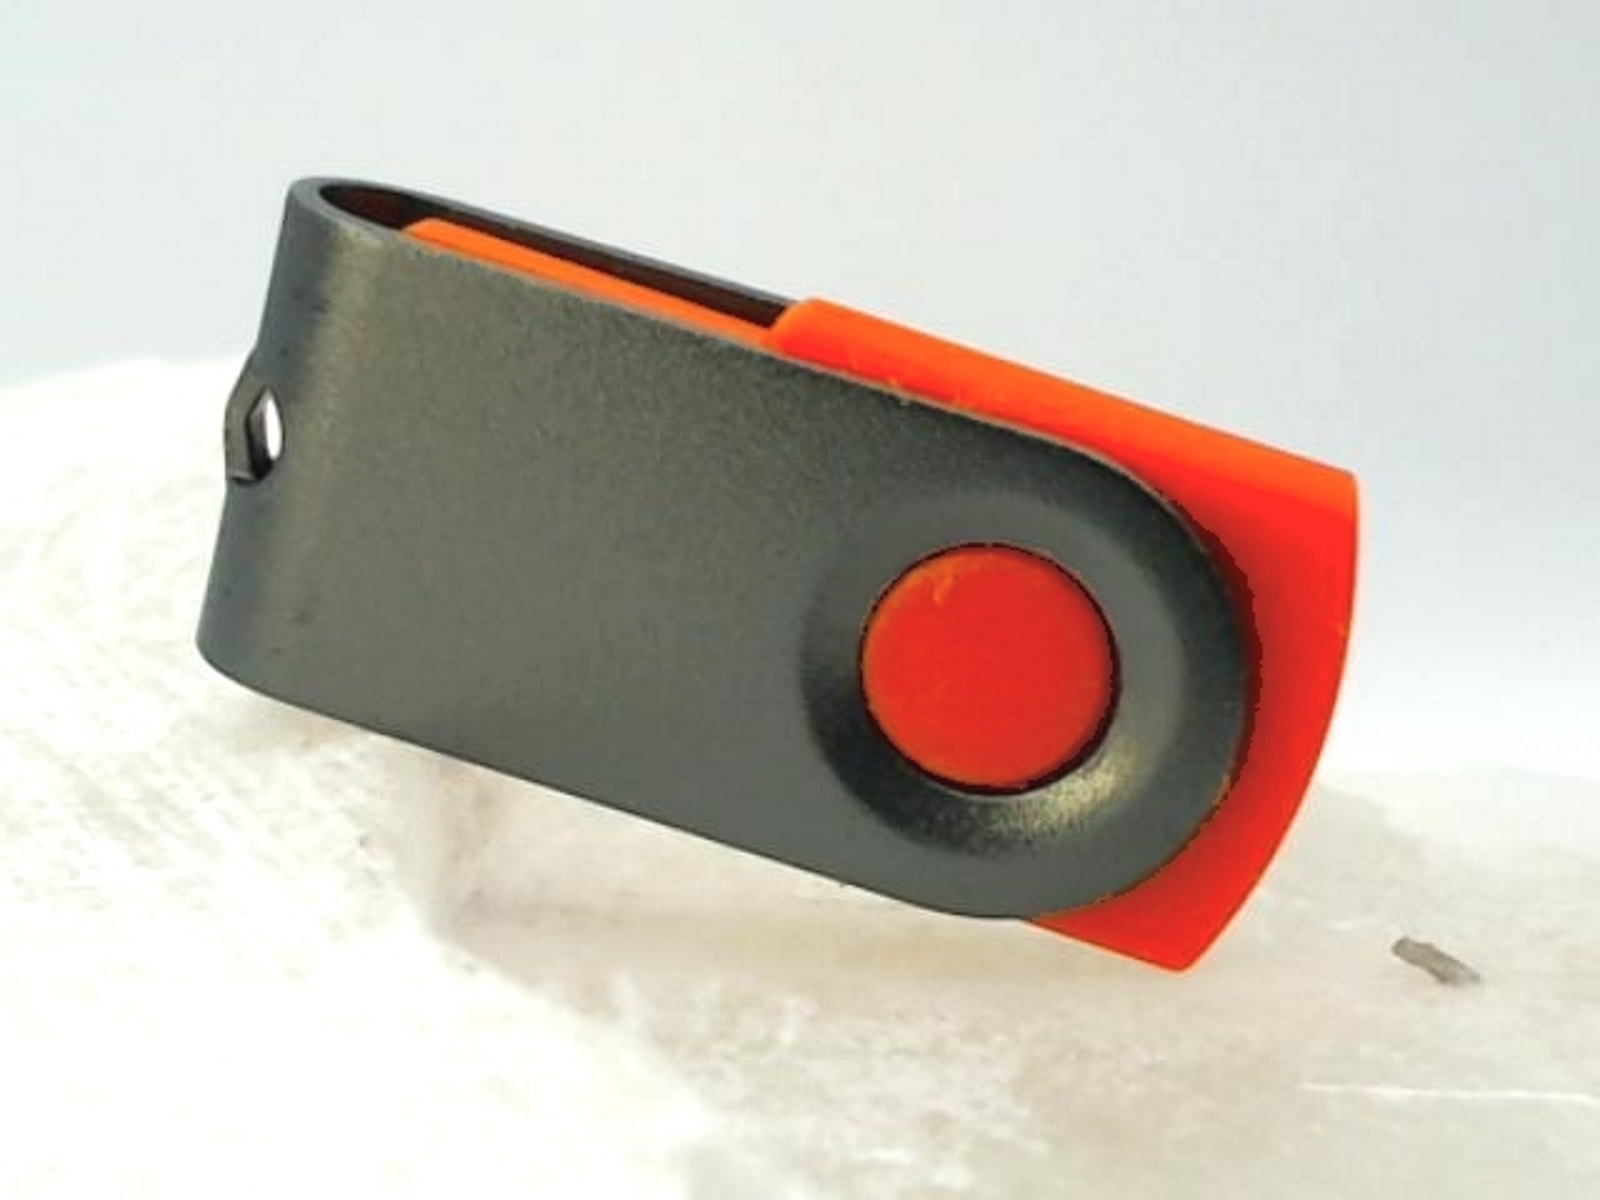 GERMANY (Rot-Graumetall, 1 GB) USB ® USB-Stick MINI-SWIVEL